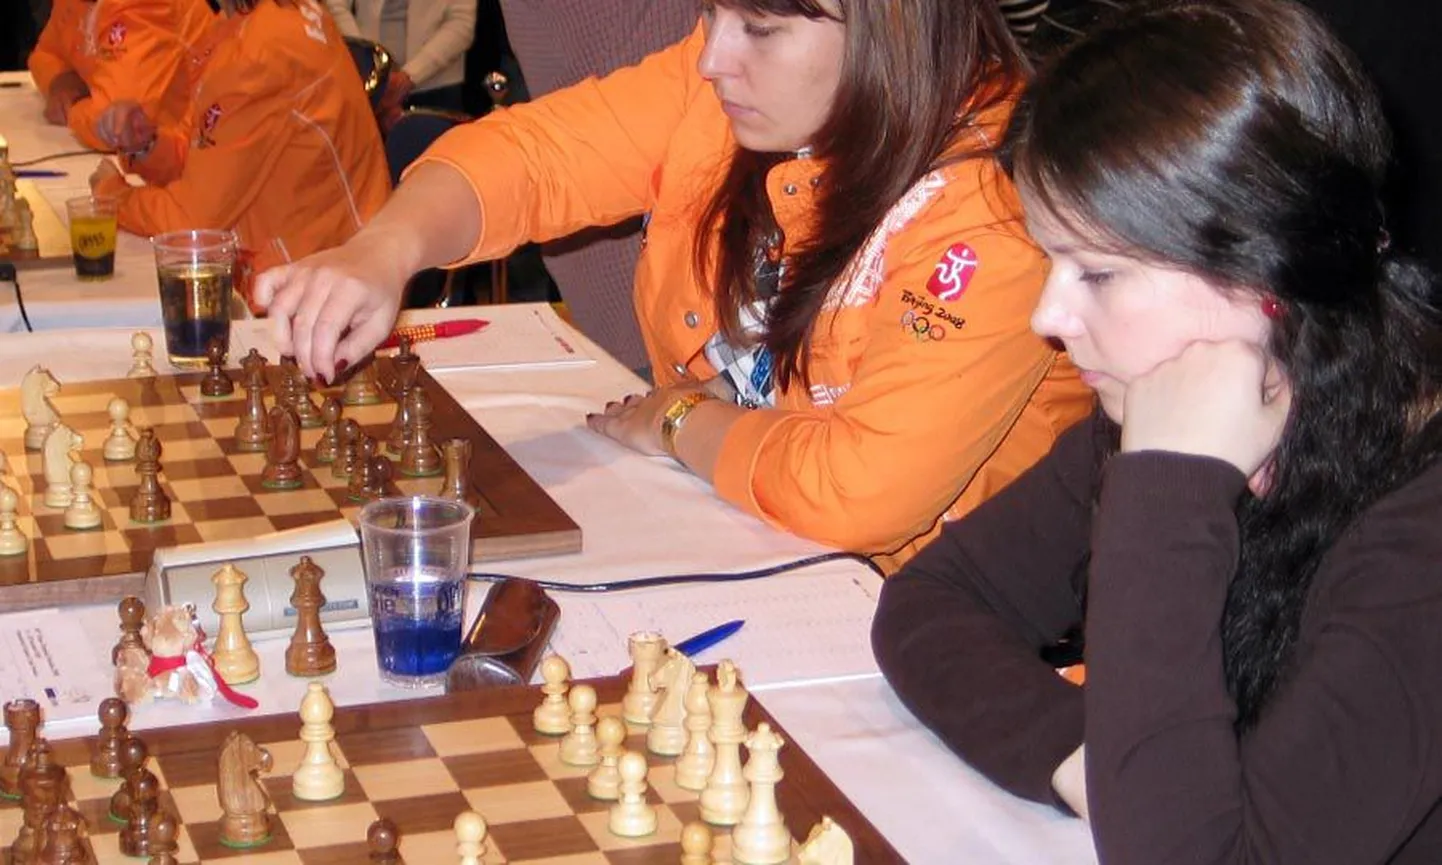 Kuigi Dresdeni maleolümpiale läks Tuuli Vahtra Eesti naiskonna varuliikmena, õnnestus tal mängima pääseda ja kaheksast partiist kuus võitu võtta.